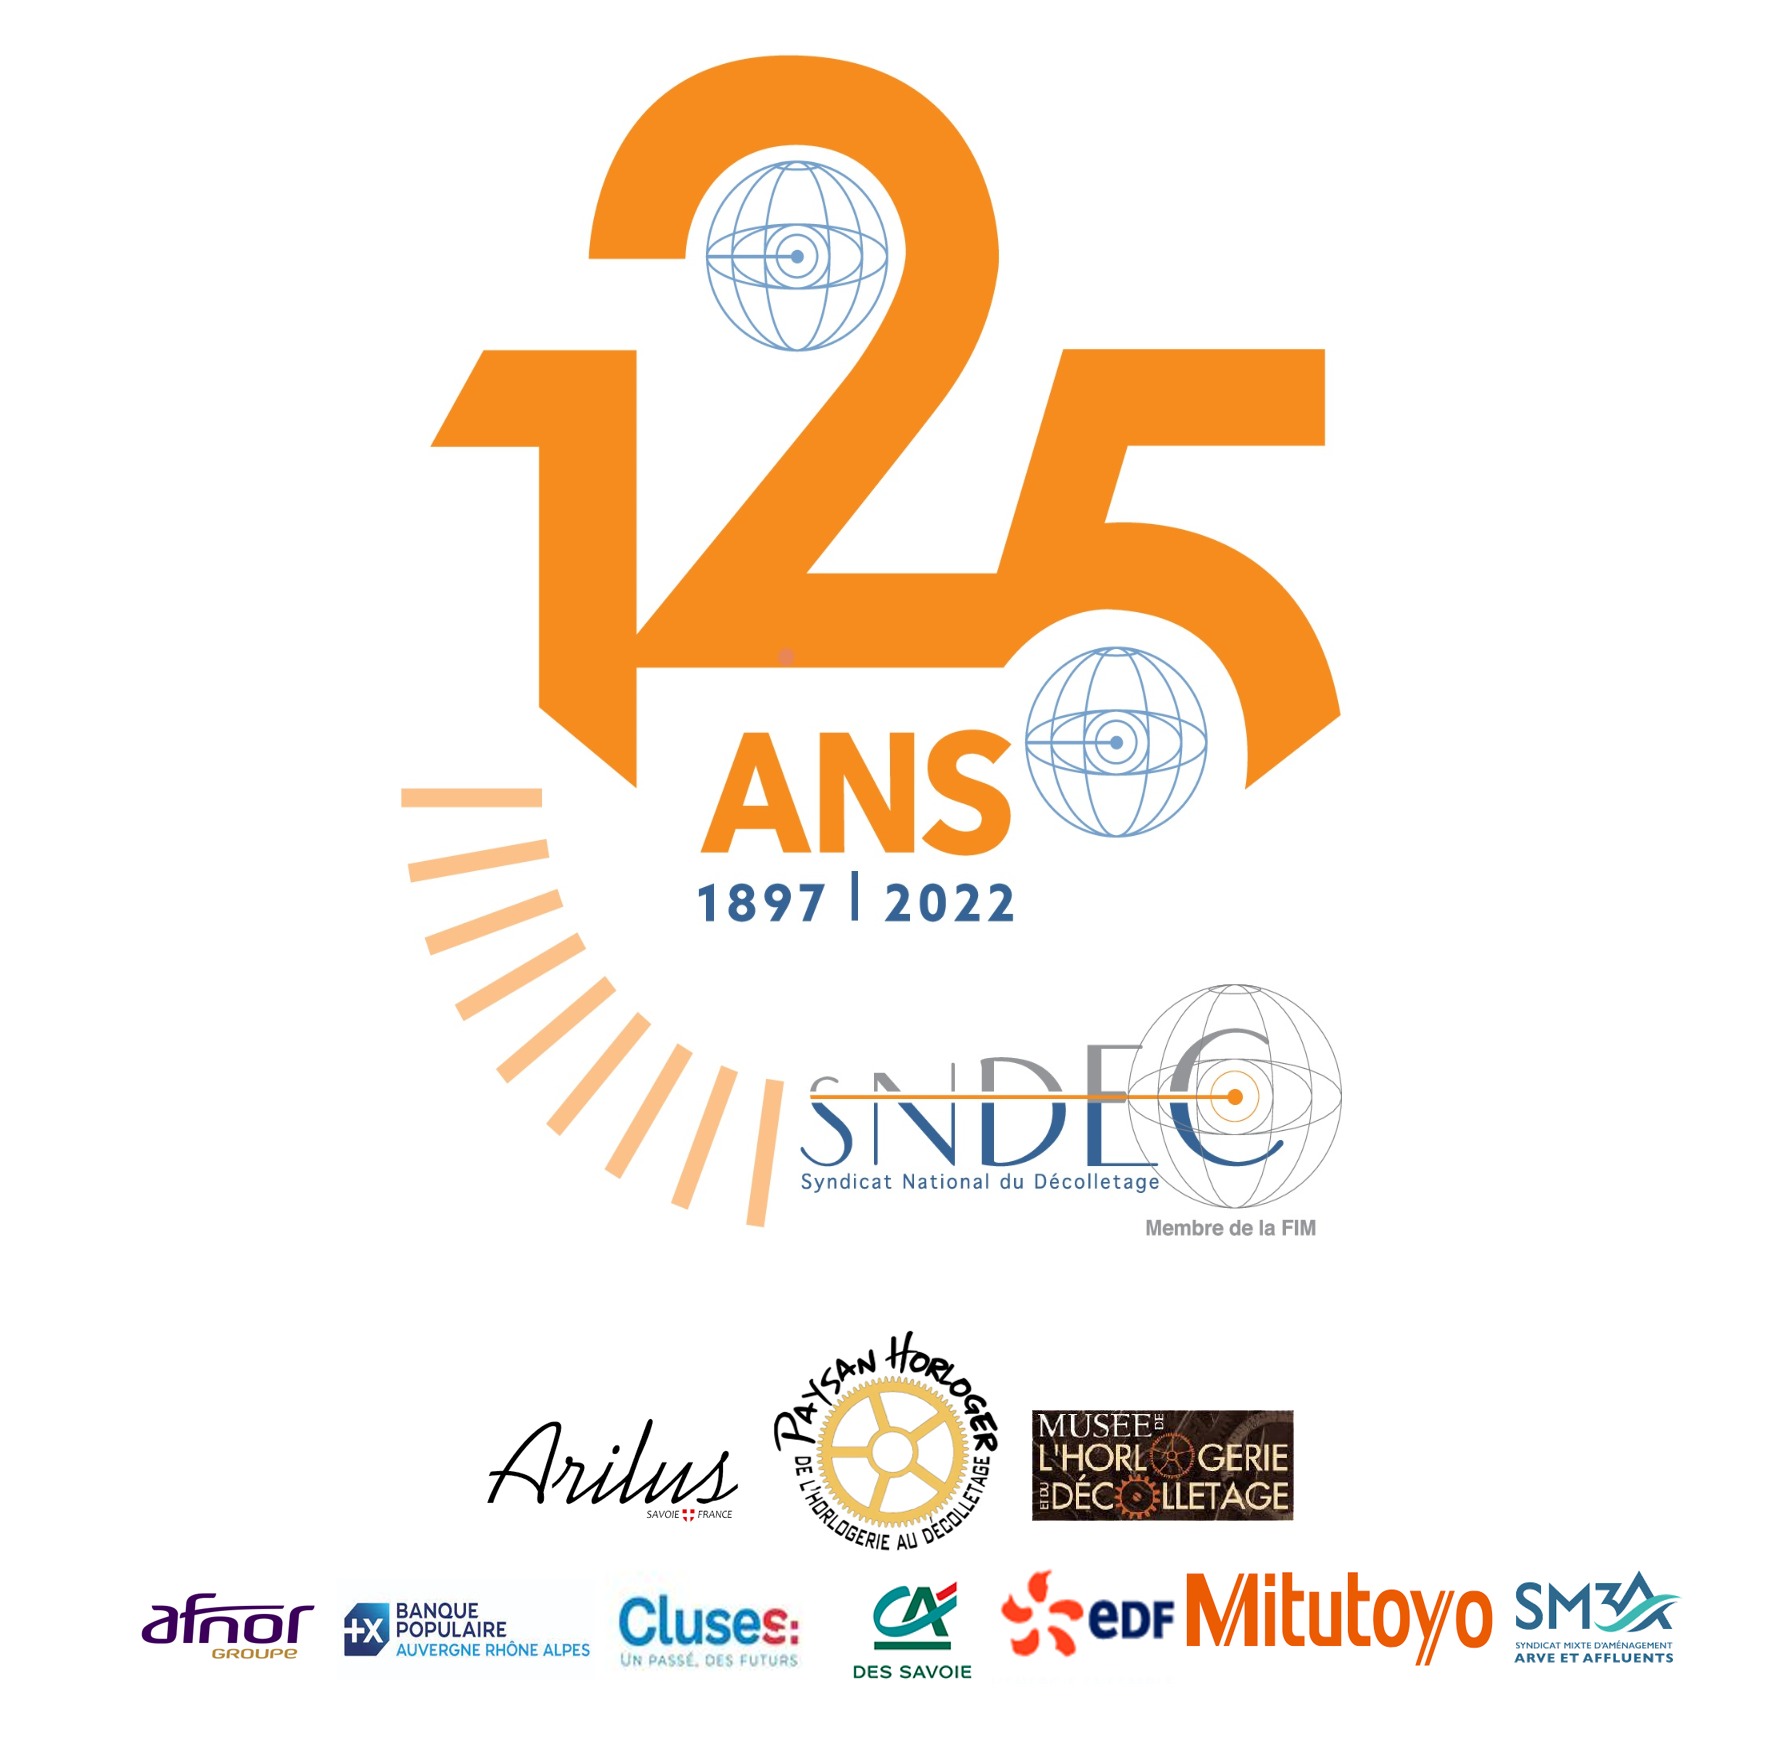 Les montres Arilus partenaire du 125ème anniversaire du Syndicat National du Décolletage